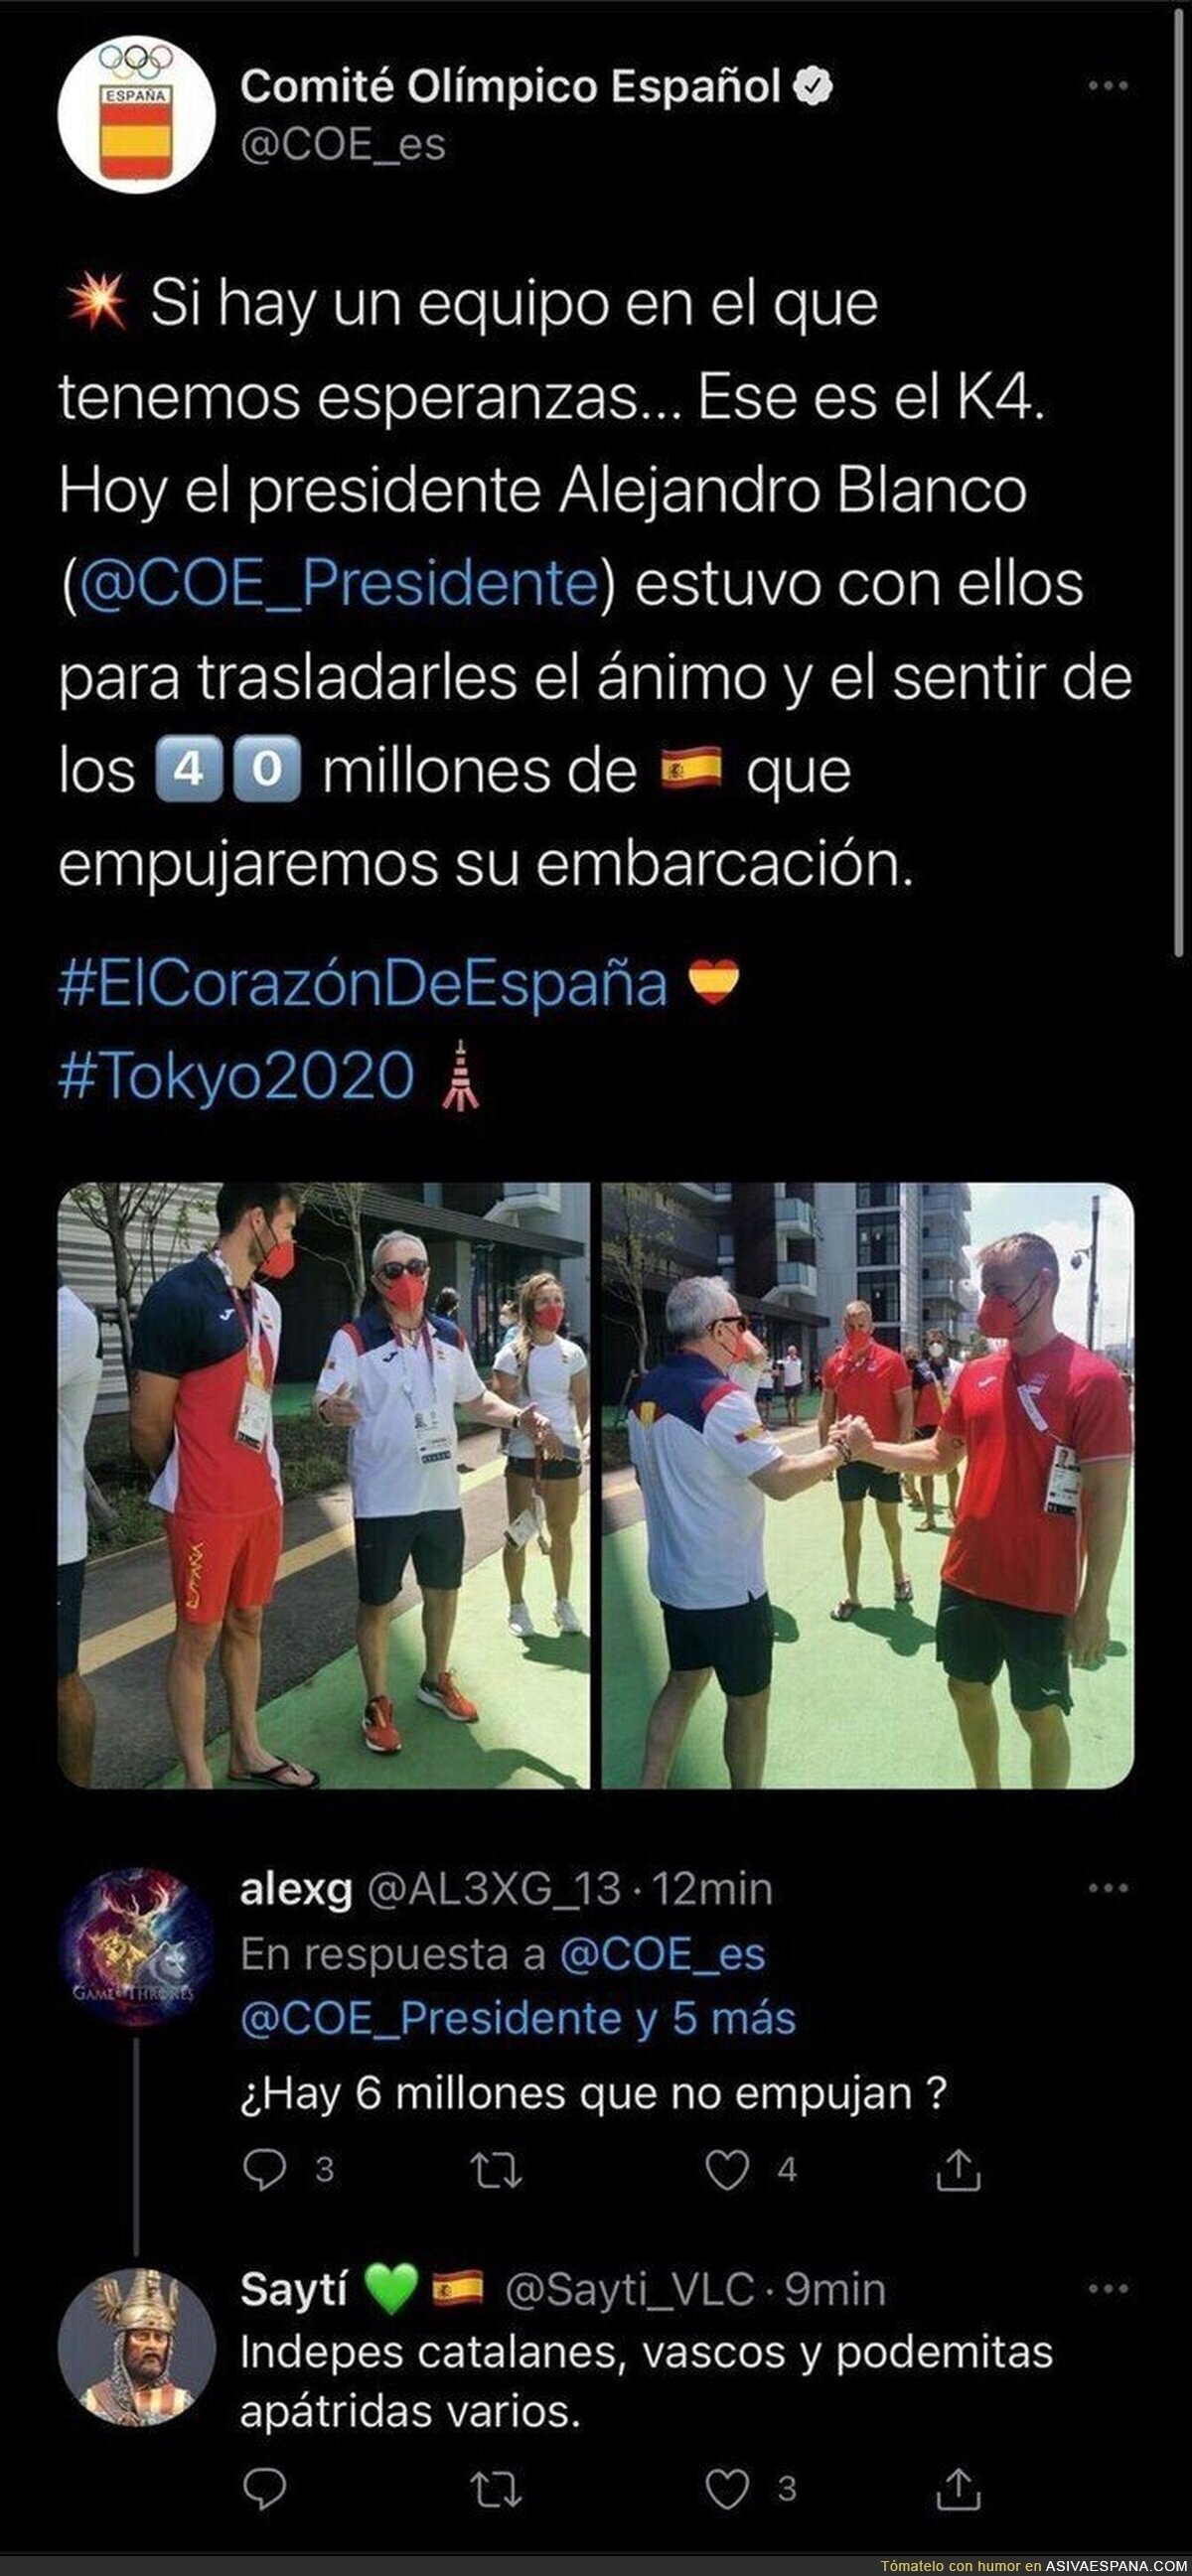 El 'Comité Olímpico Español' dice que hay 40 millones de españoles empujando para animar y no tarda en salir un votante de VOX en responder